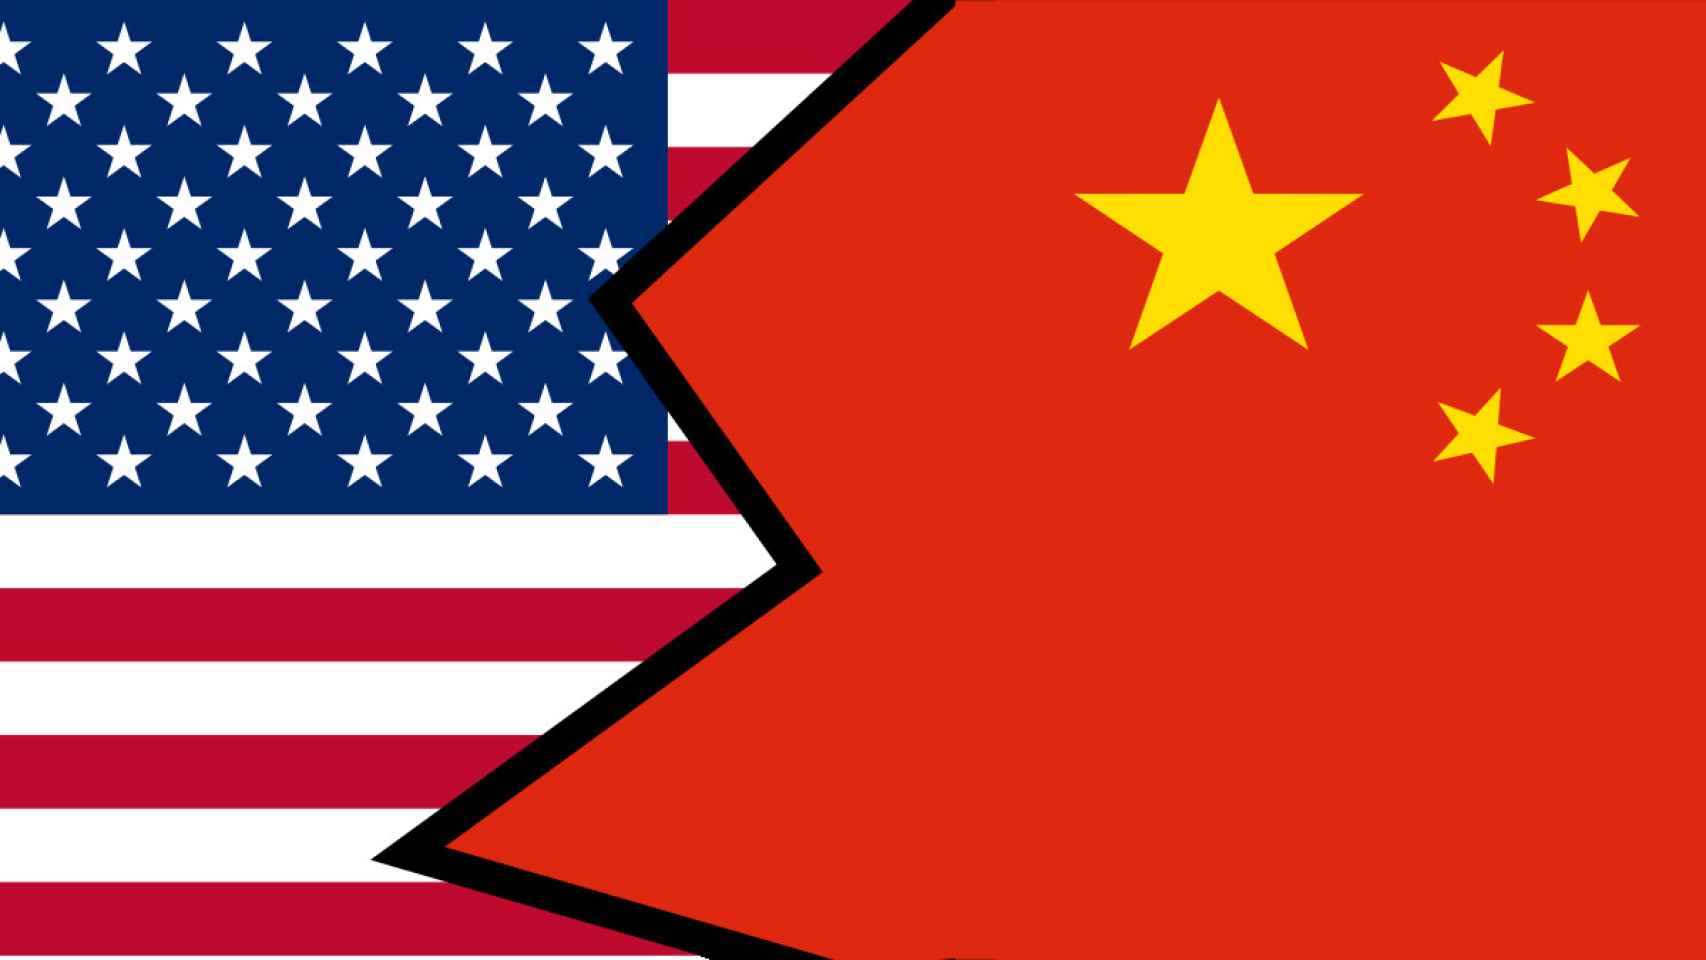 Banderas de Estados Unidos y China, países que protagonizan la guerra de la dependencia tecnológica / LECS